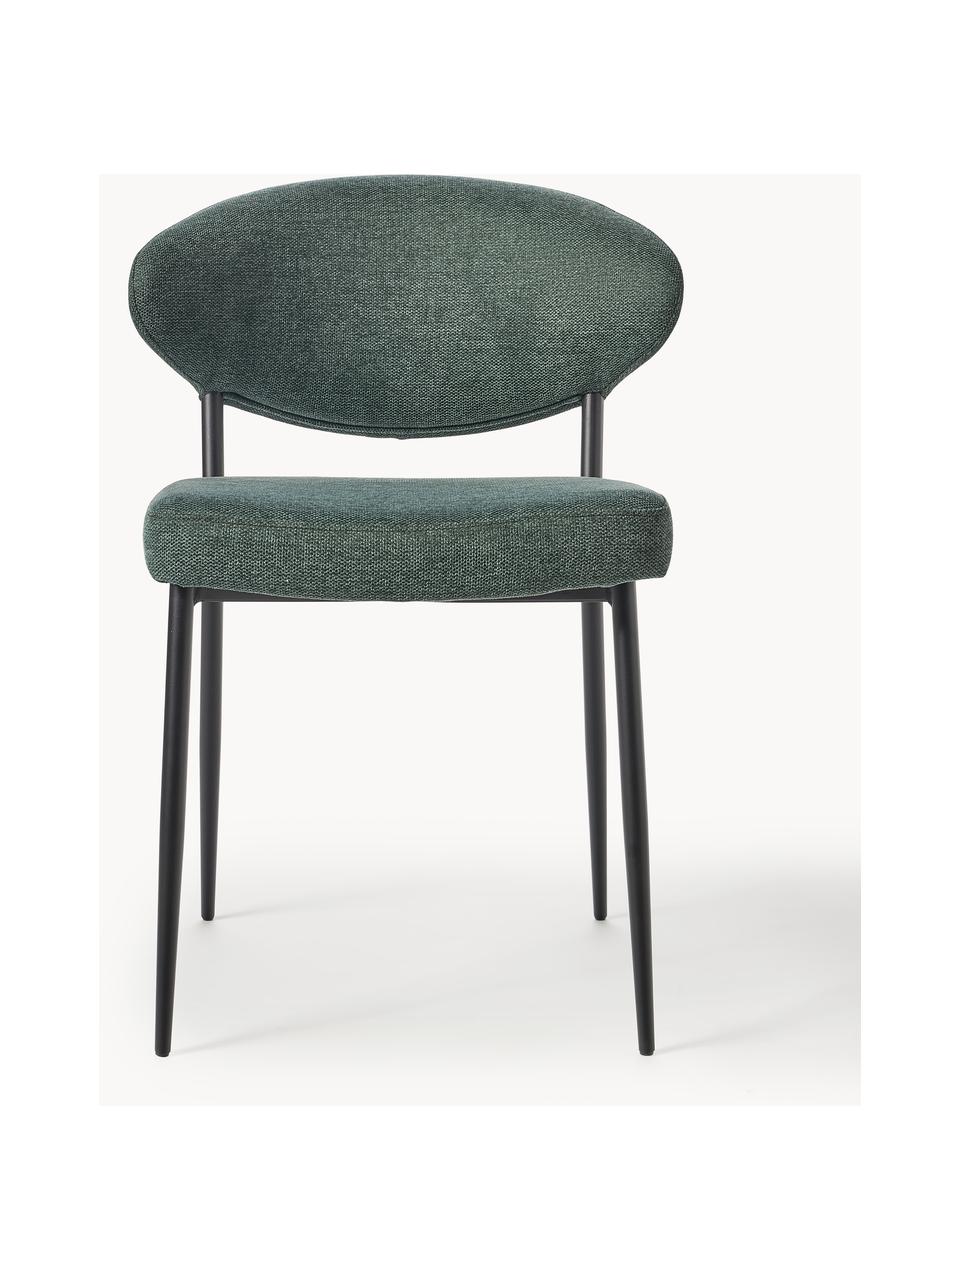 Čalouněné židle Adele, 2 ks, Tmavě zelená, Š 54 cm, H 57 cm